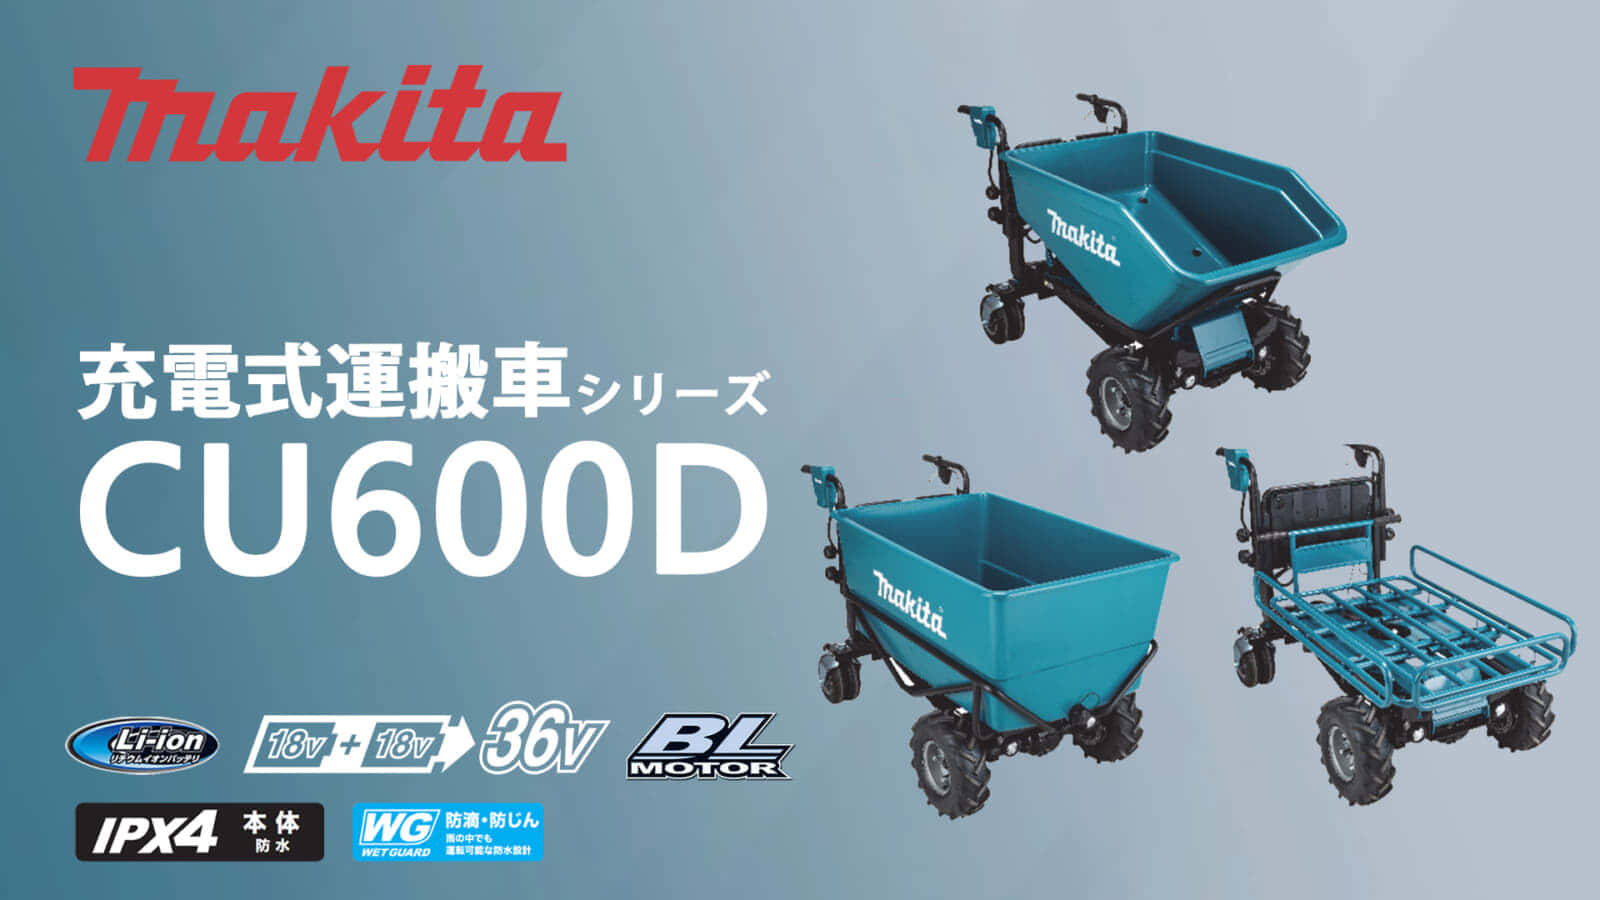 マキタ CU600Dシリーズ 充電式運搬車を発売、4輪式の最大荷重300kg対応モデル